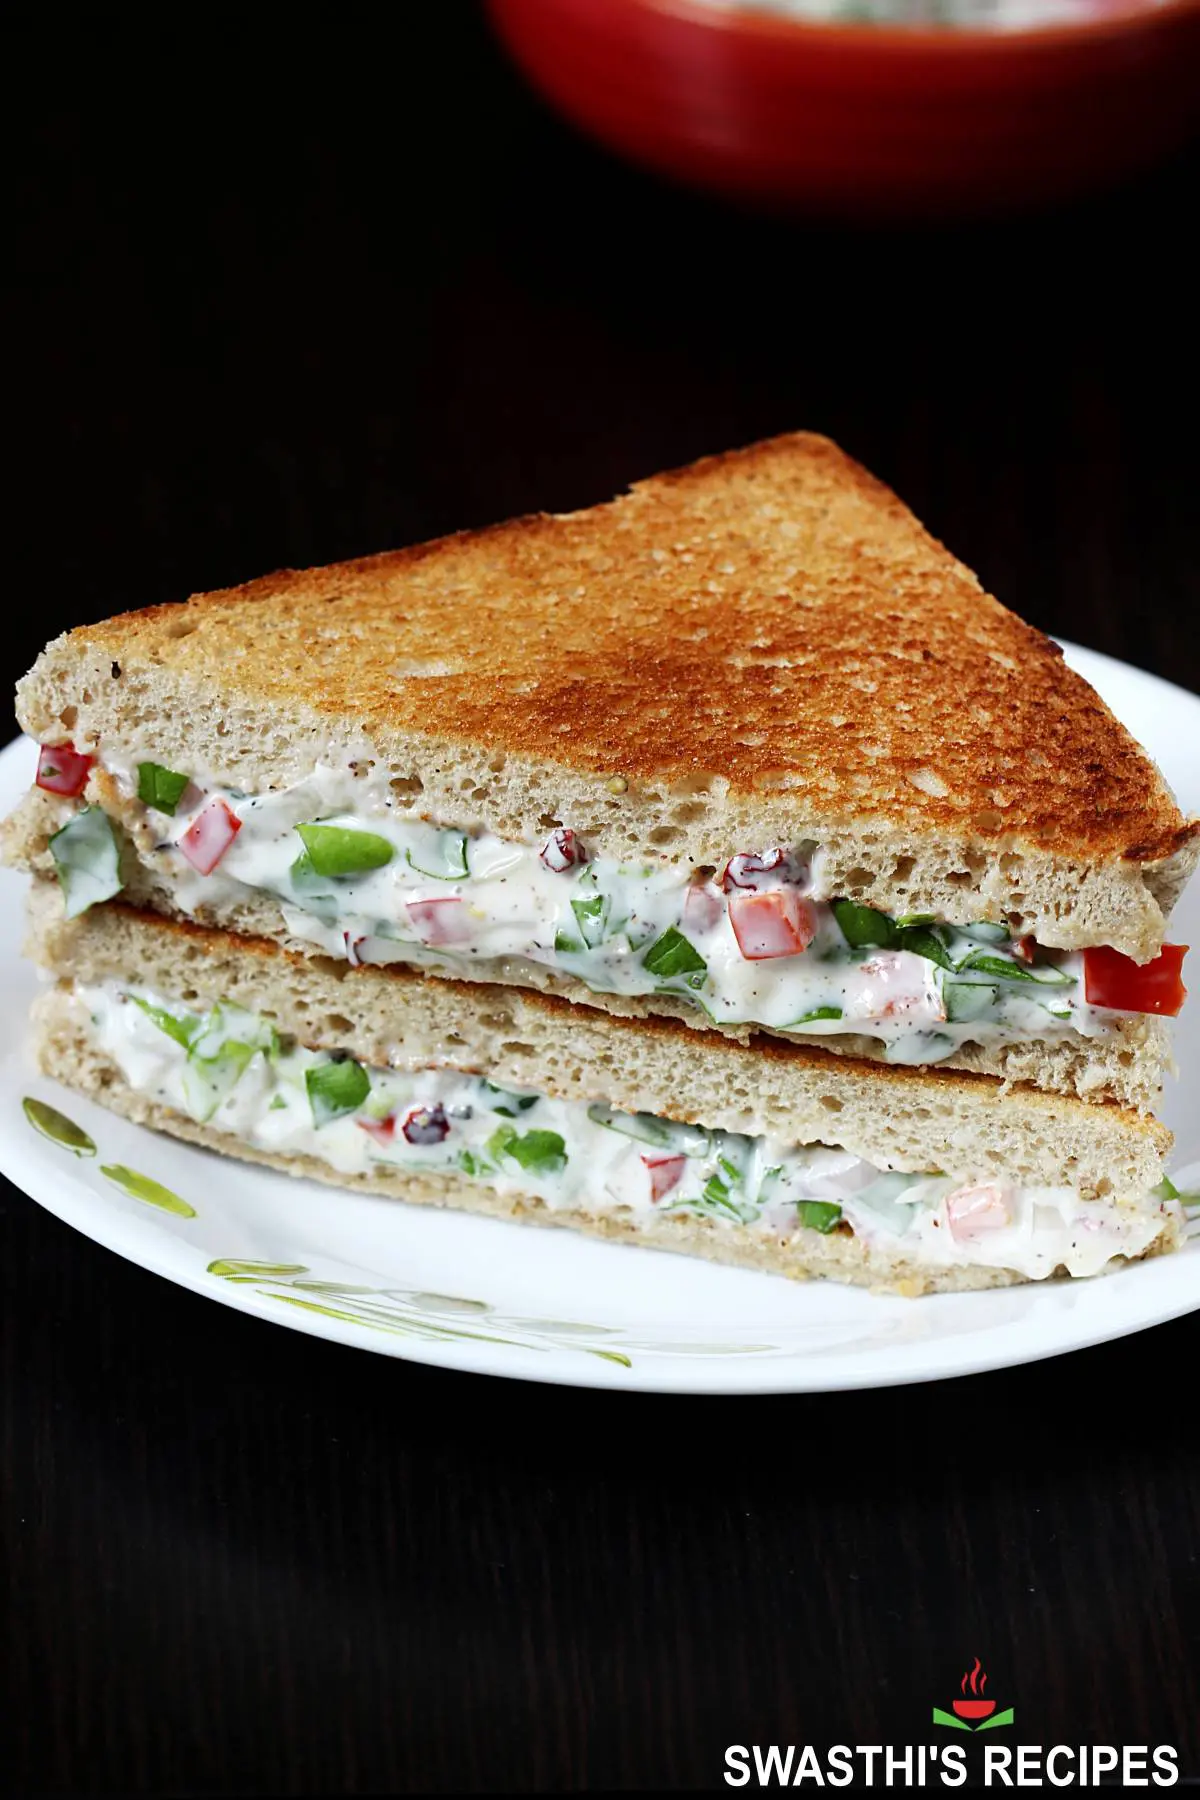 Breakfast Sandwich maker linked here:  Single , Sandwich  Maker